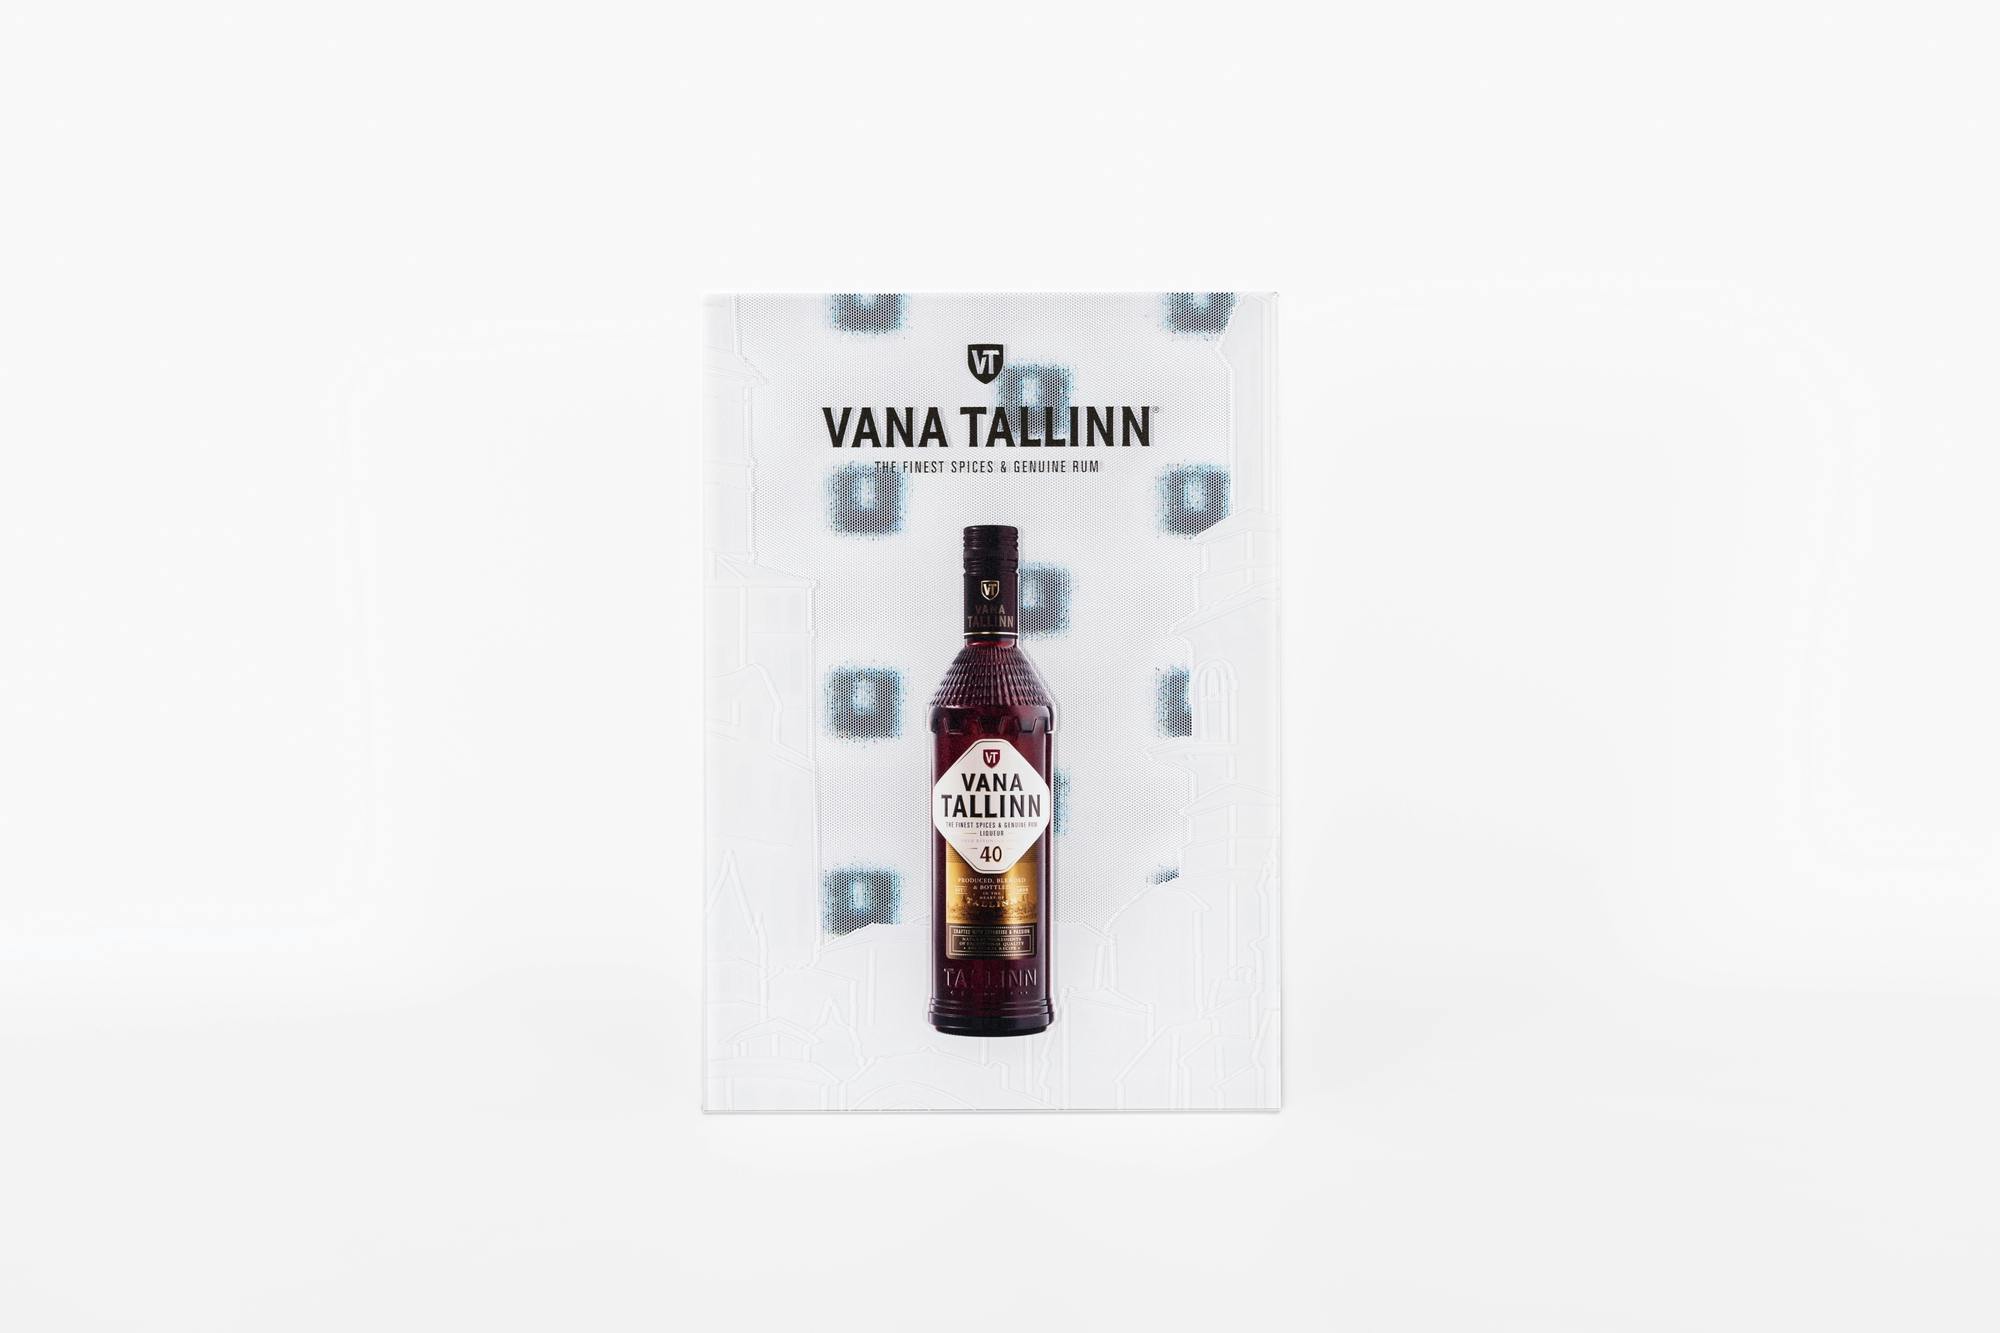 Vana Tallinn Overview © swissQprint 